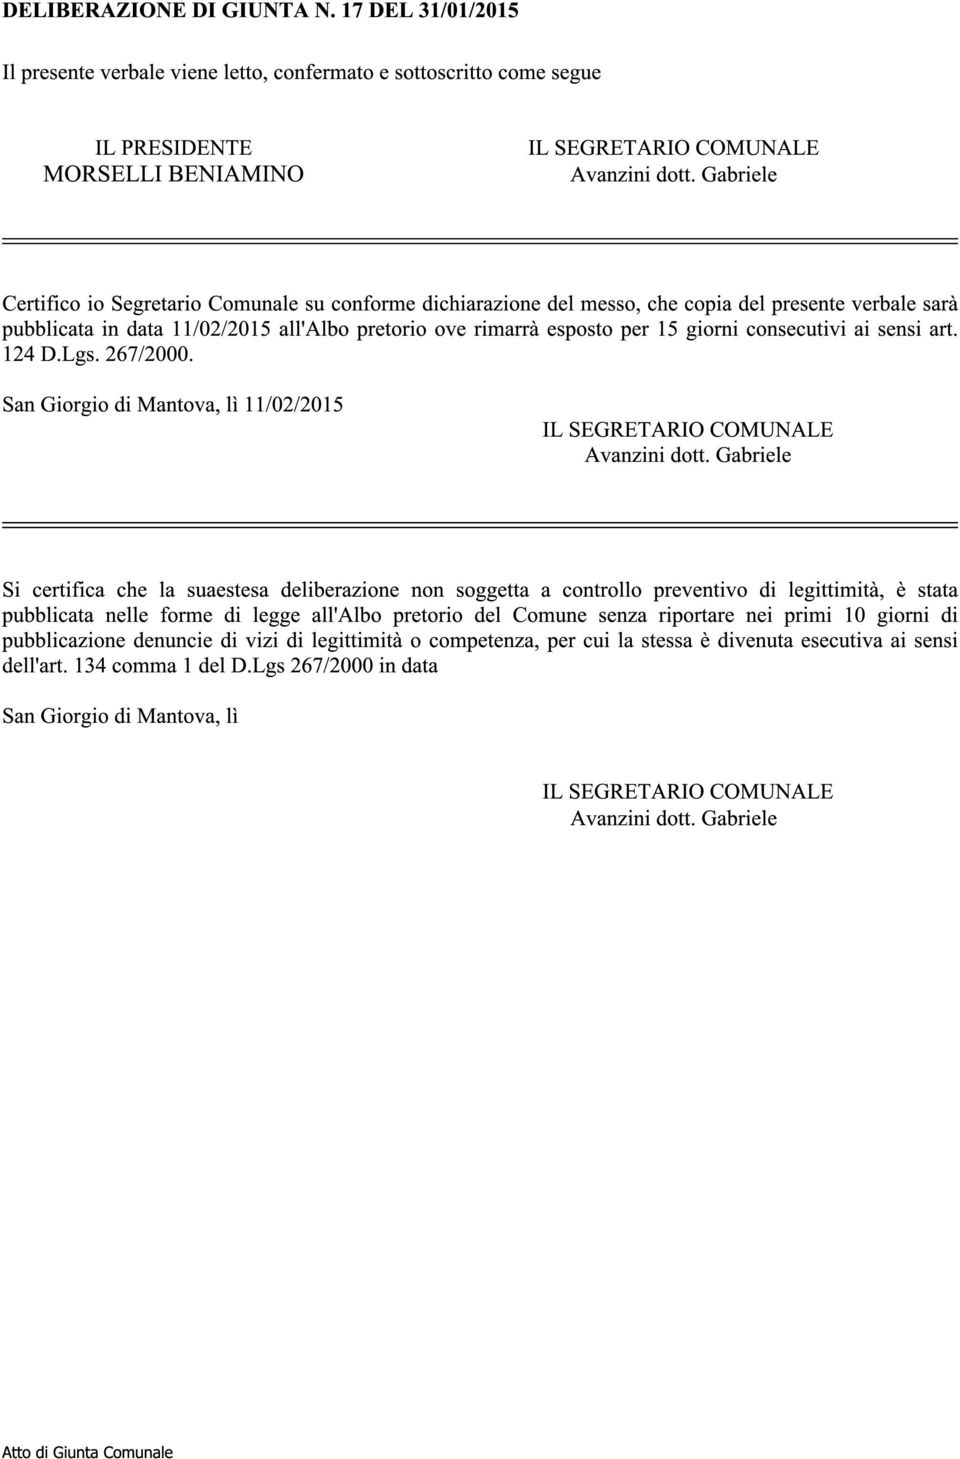 consecutivi ai sensi art. 124 D.Lgs. 267/2000. San Giorgio di Mantova, lì 11/02/2015 IL SEGRETARIO COMUNALE Avanzini dott.